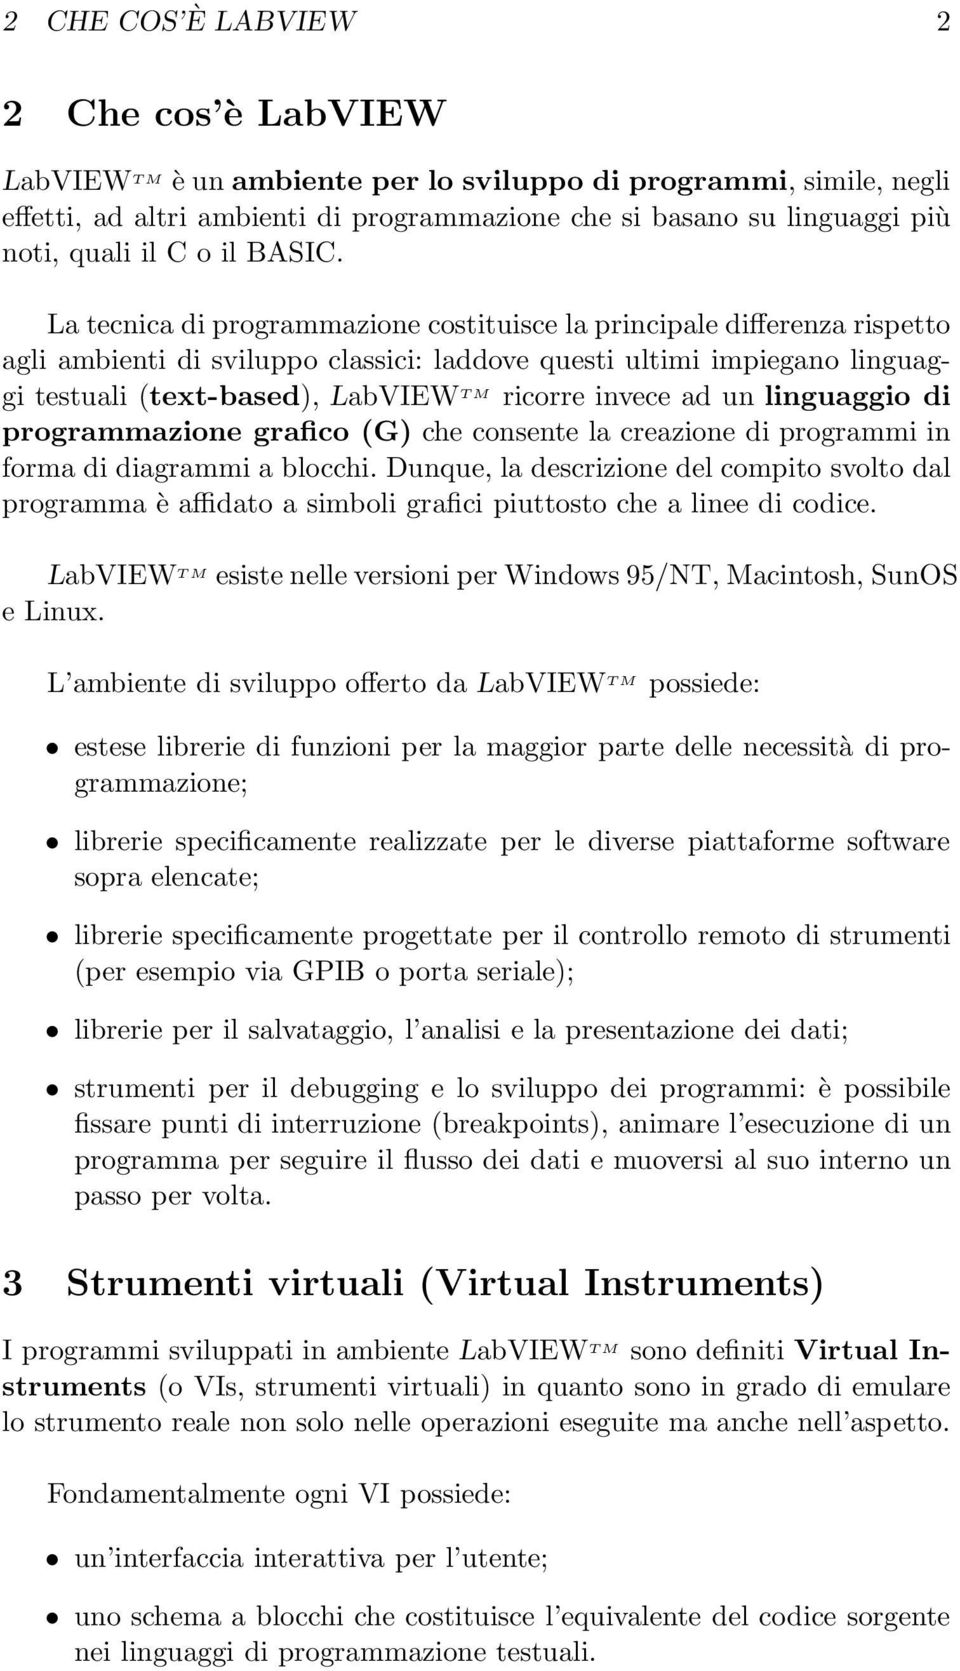 La tecnica di programmazione costituisce la principale differenza rispetto agli ambienti di sviluppo classici: laddove questi ultimi impiegano linguaggi testuali (text-based), LabVIEW T M ricorre